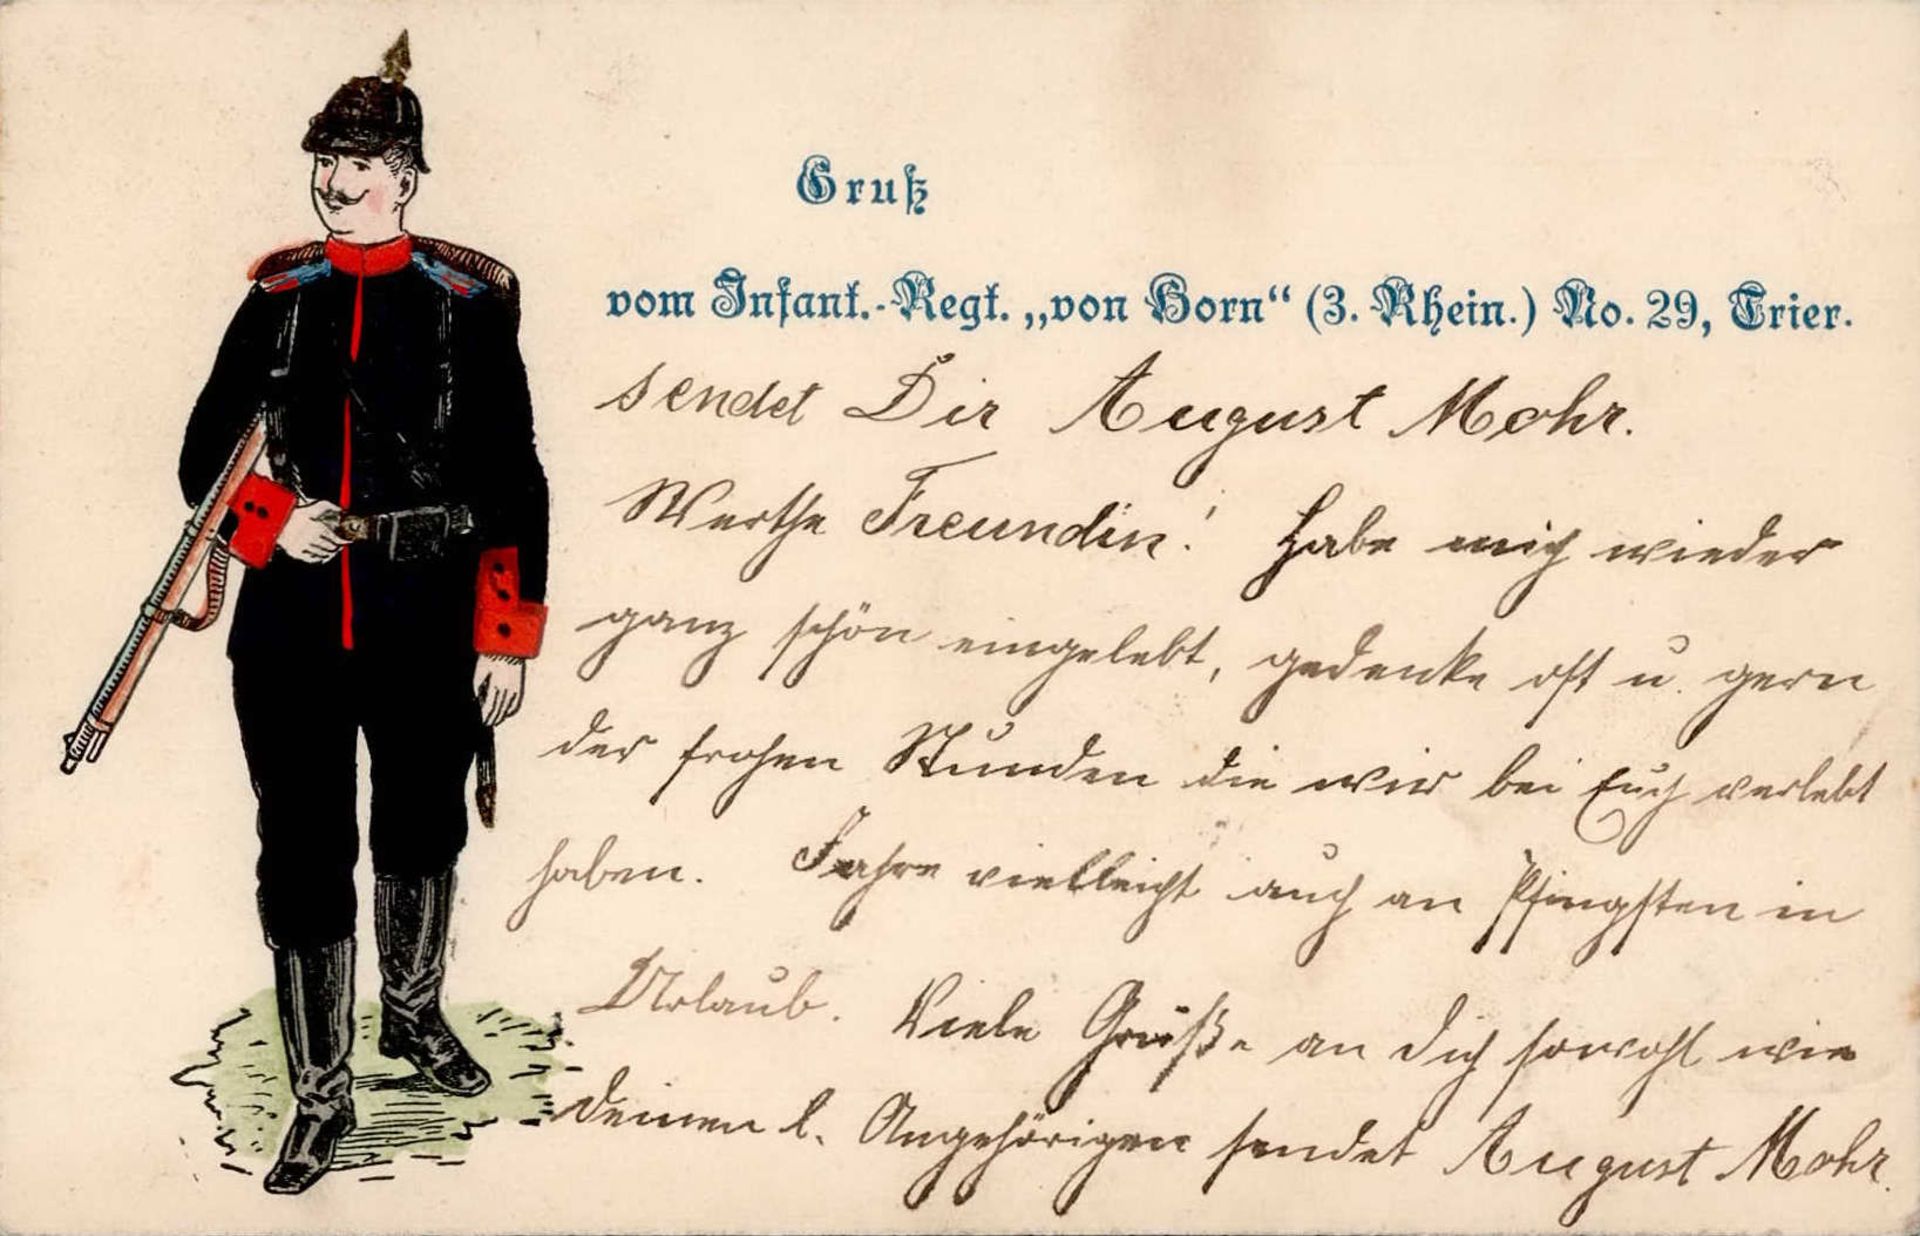 Regiment Trier Infant.-Regt. von Horn Nr. 29 Prägekarte I-II